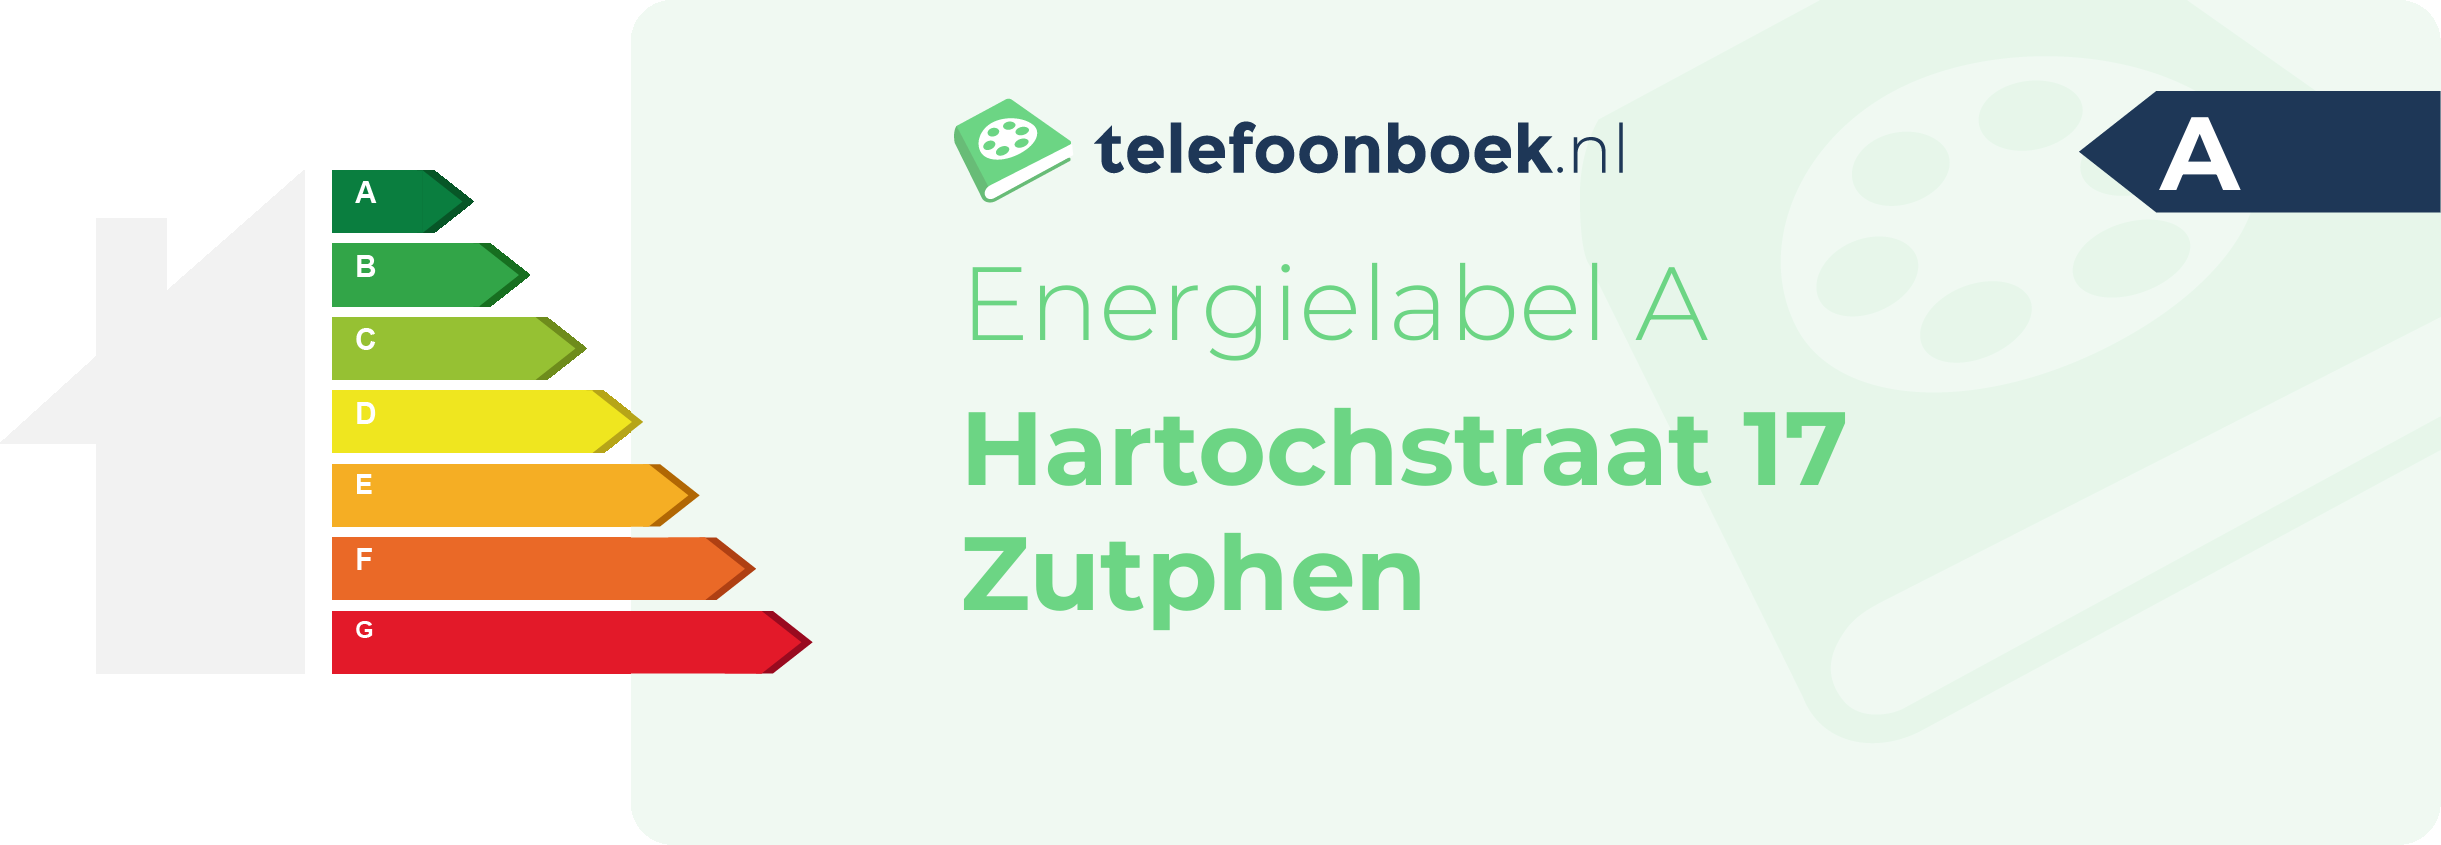 Energielabel Hartochstraat 17 Zutphen